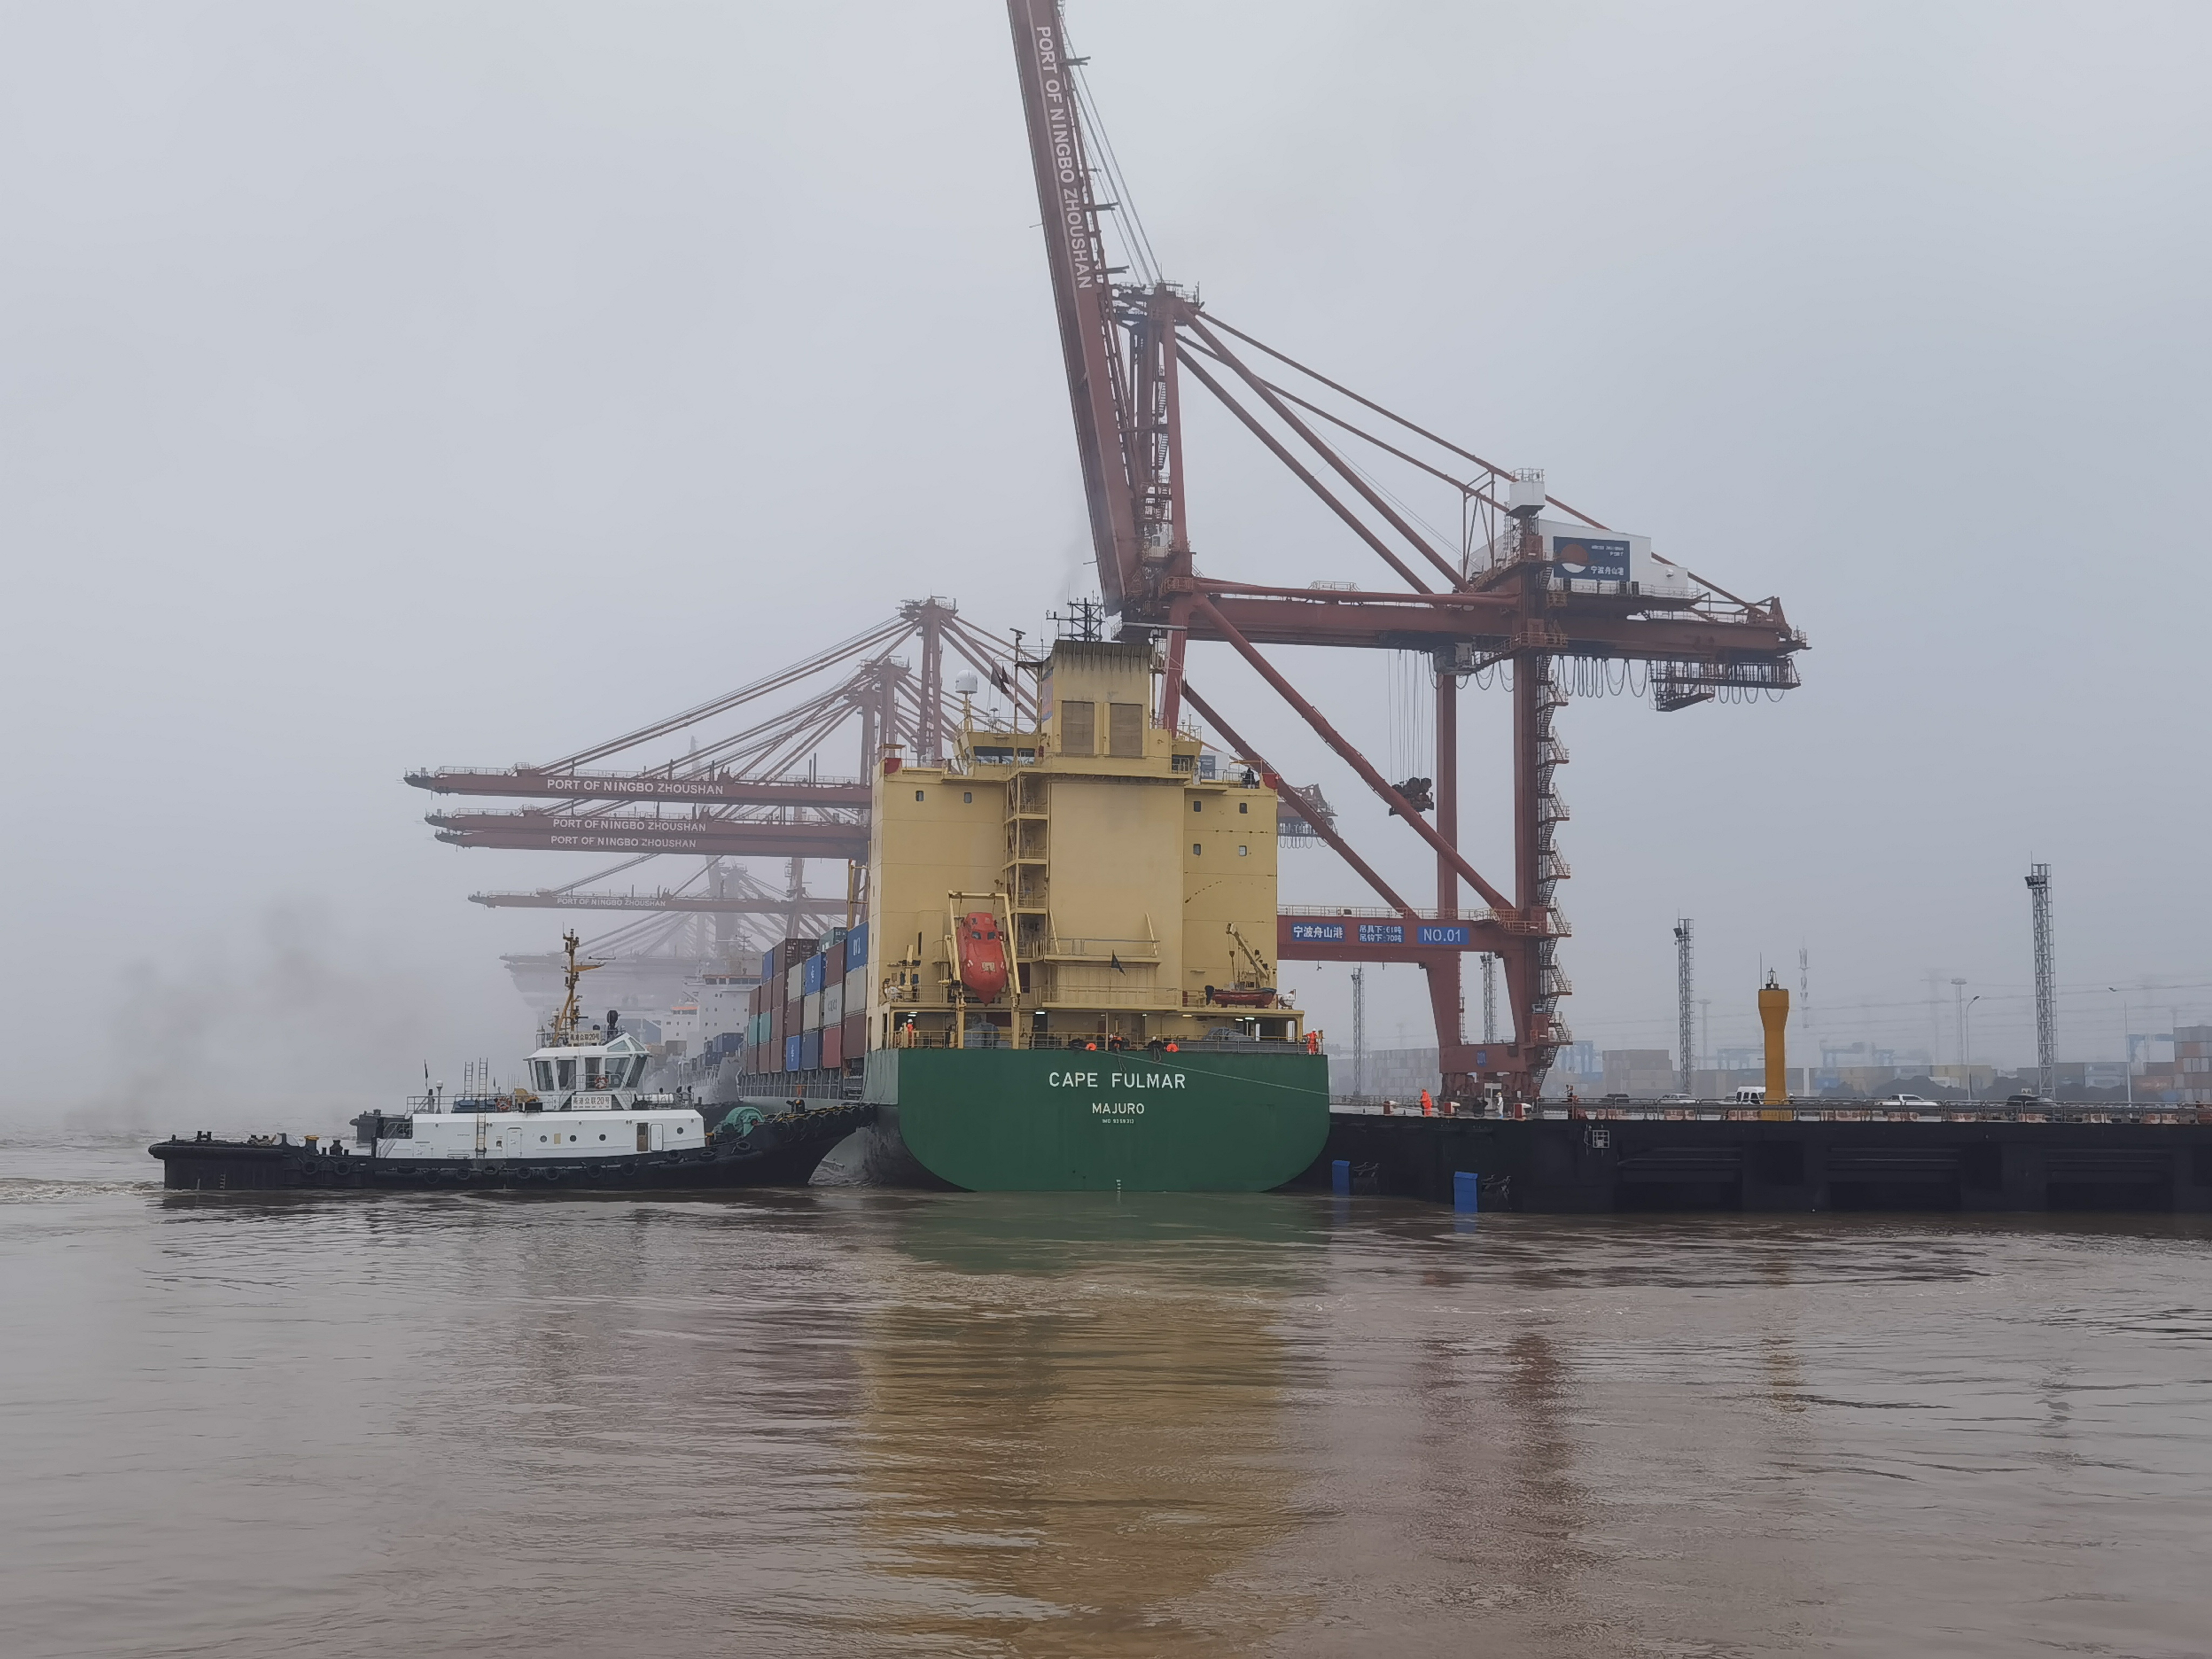 宁波舟山港穿山港区集装箱码头1号泊位迎靠第一艘国际航行船舶